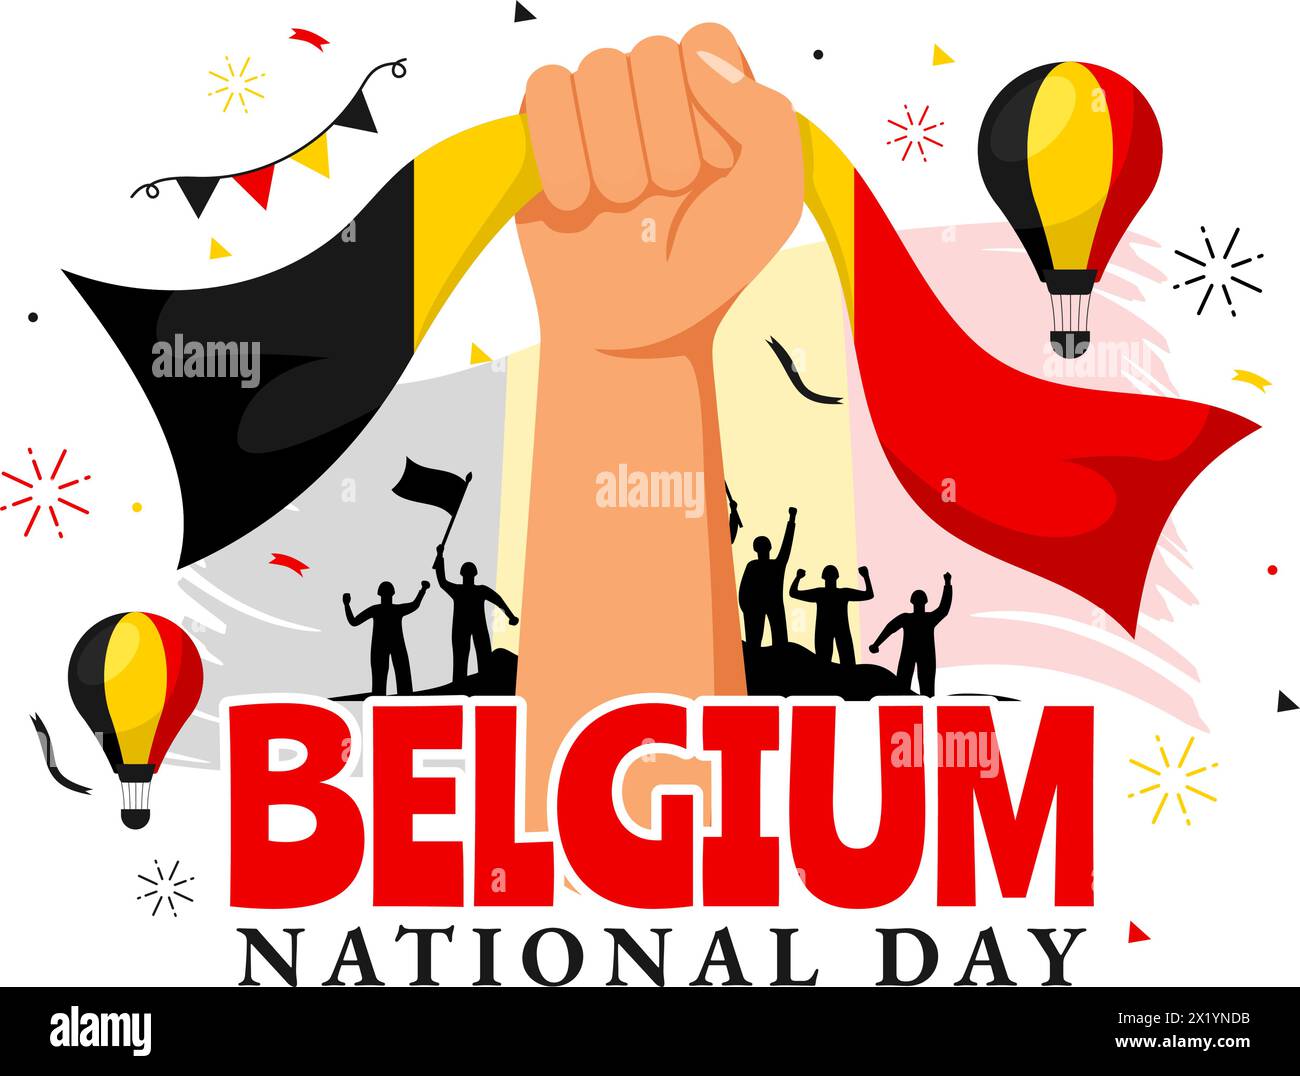 Glückliche Belgien Unabhängigkeitstag Vektor-Illustration am 21. Juli mit wehender Flagge und Band im Nationalfeiertag Flat Cartoon Hintergrund Design Stock Vektor